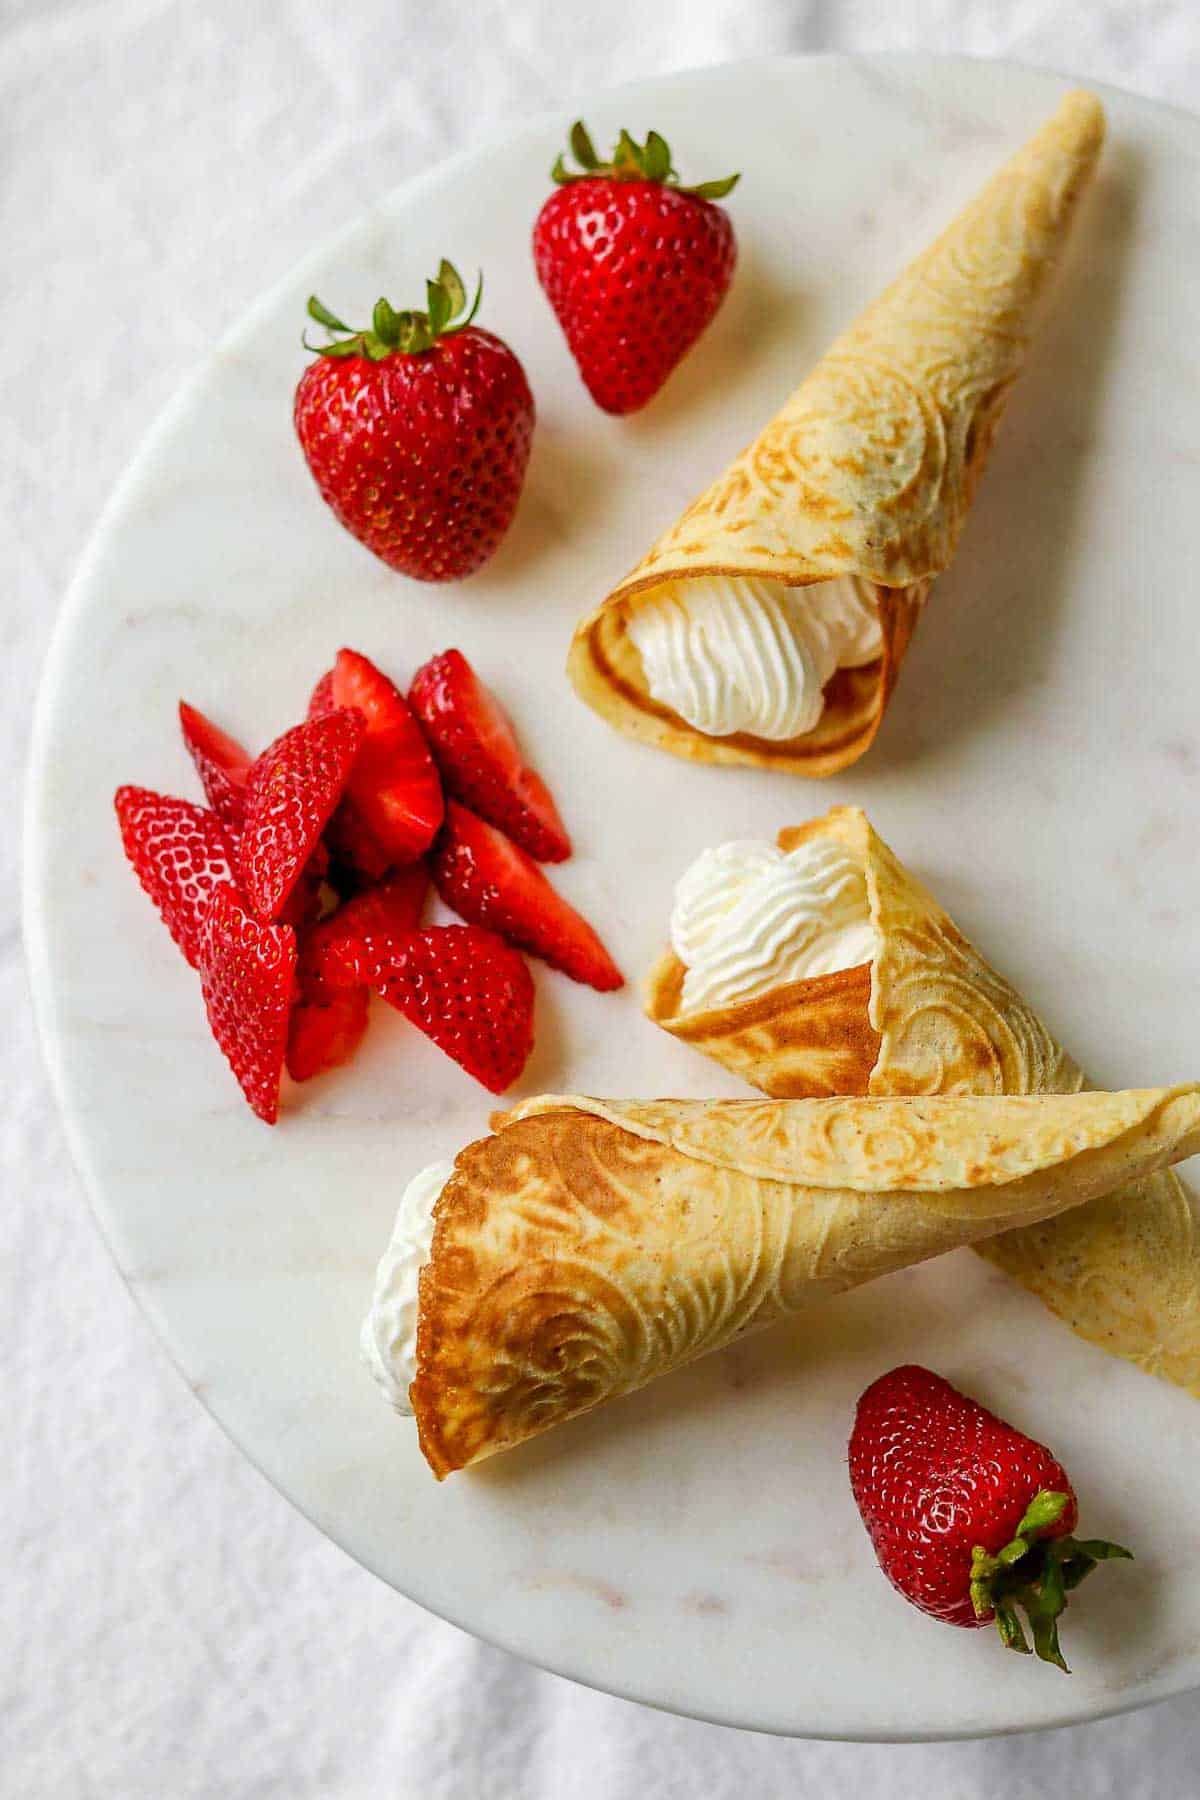 Krumkake filled with whipped cream next to fresh strawberries.